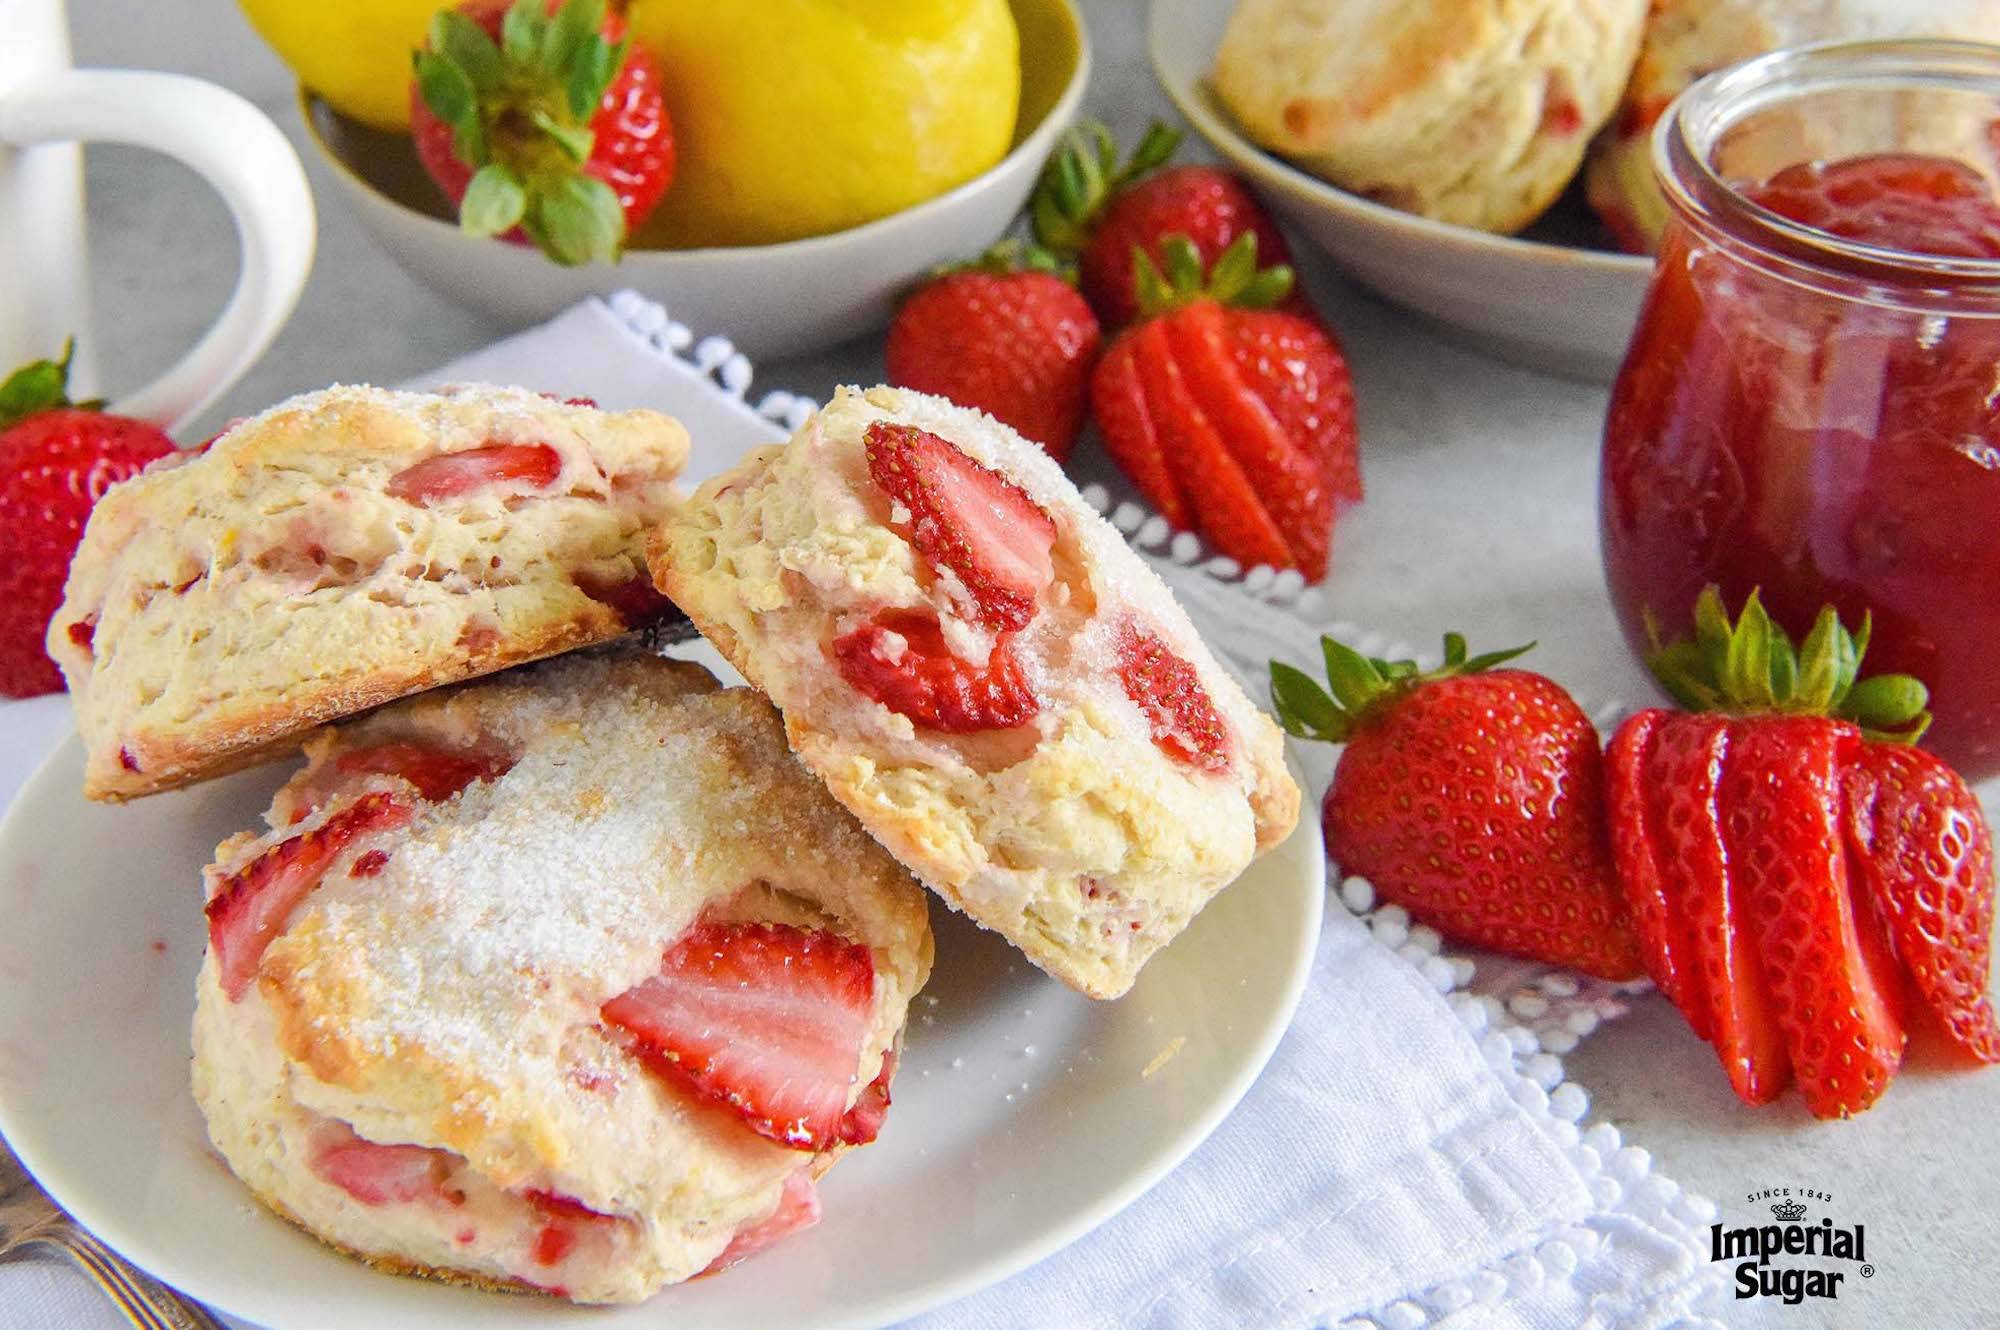 Strawberry Biscuit Cake Recipe - Pillsbury.com